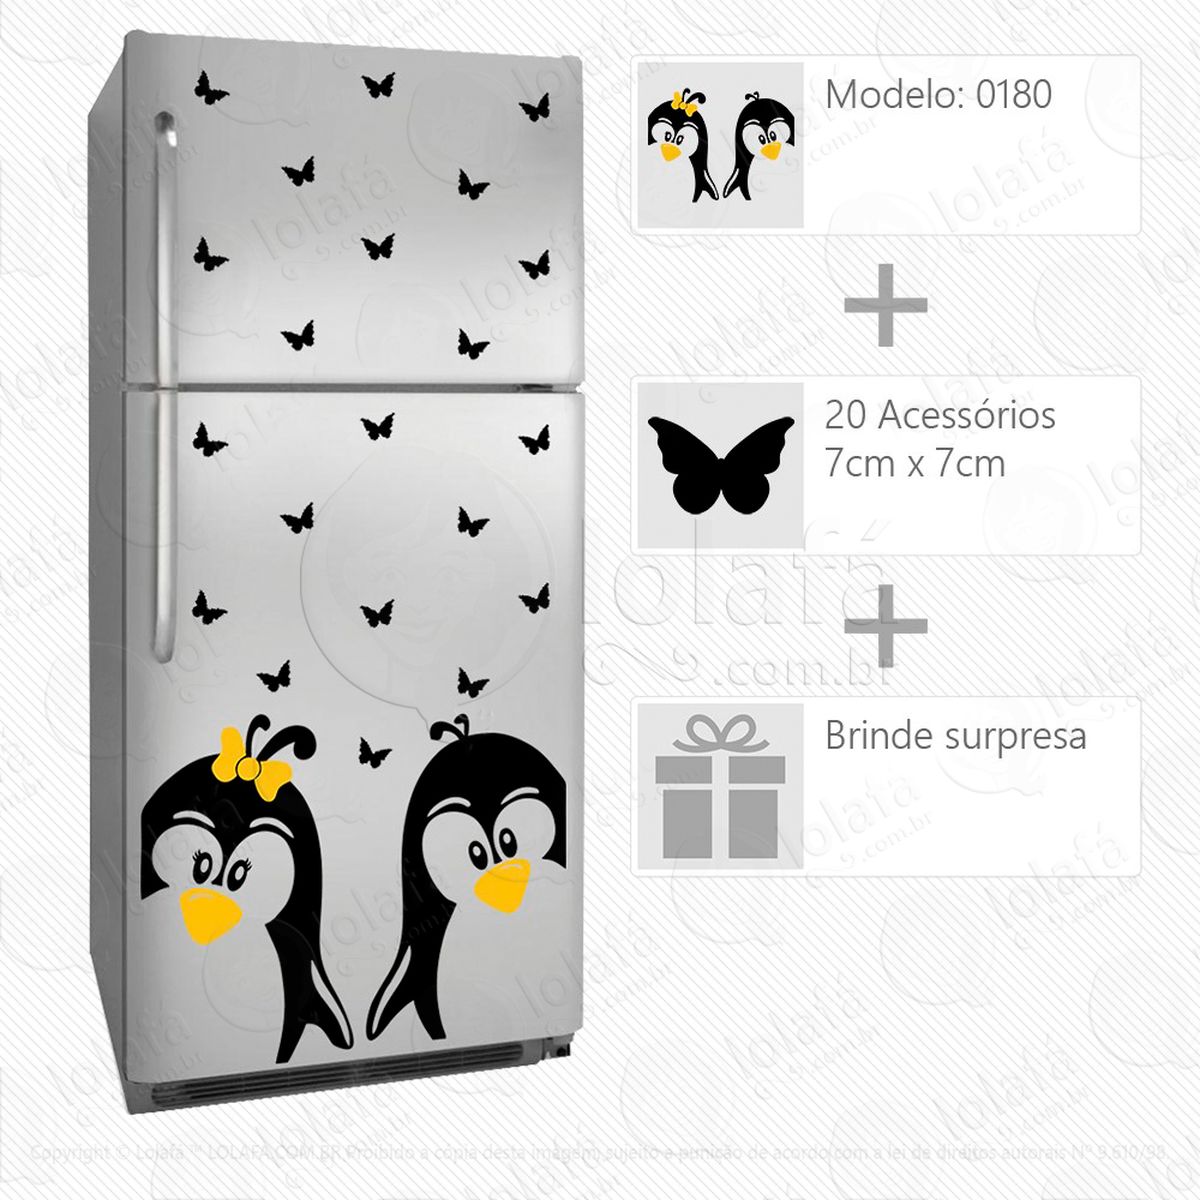 pinguins adesivo para geladeira e frigobar - mod:180